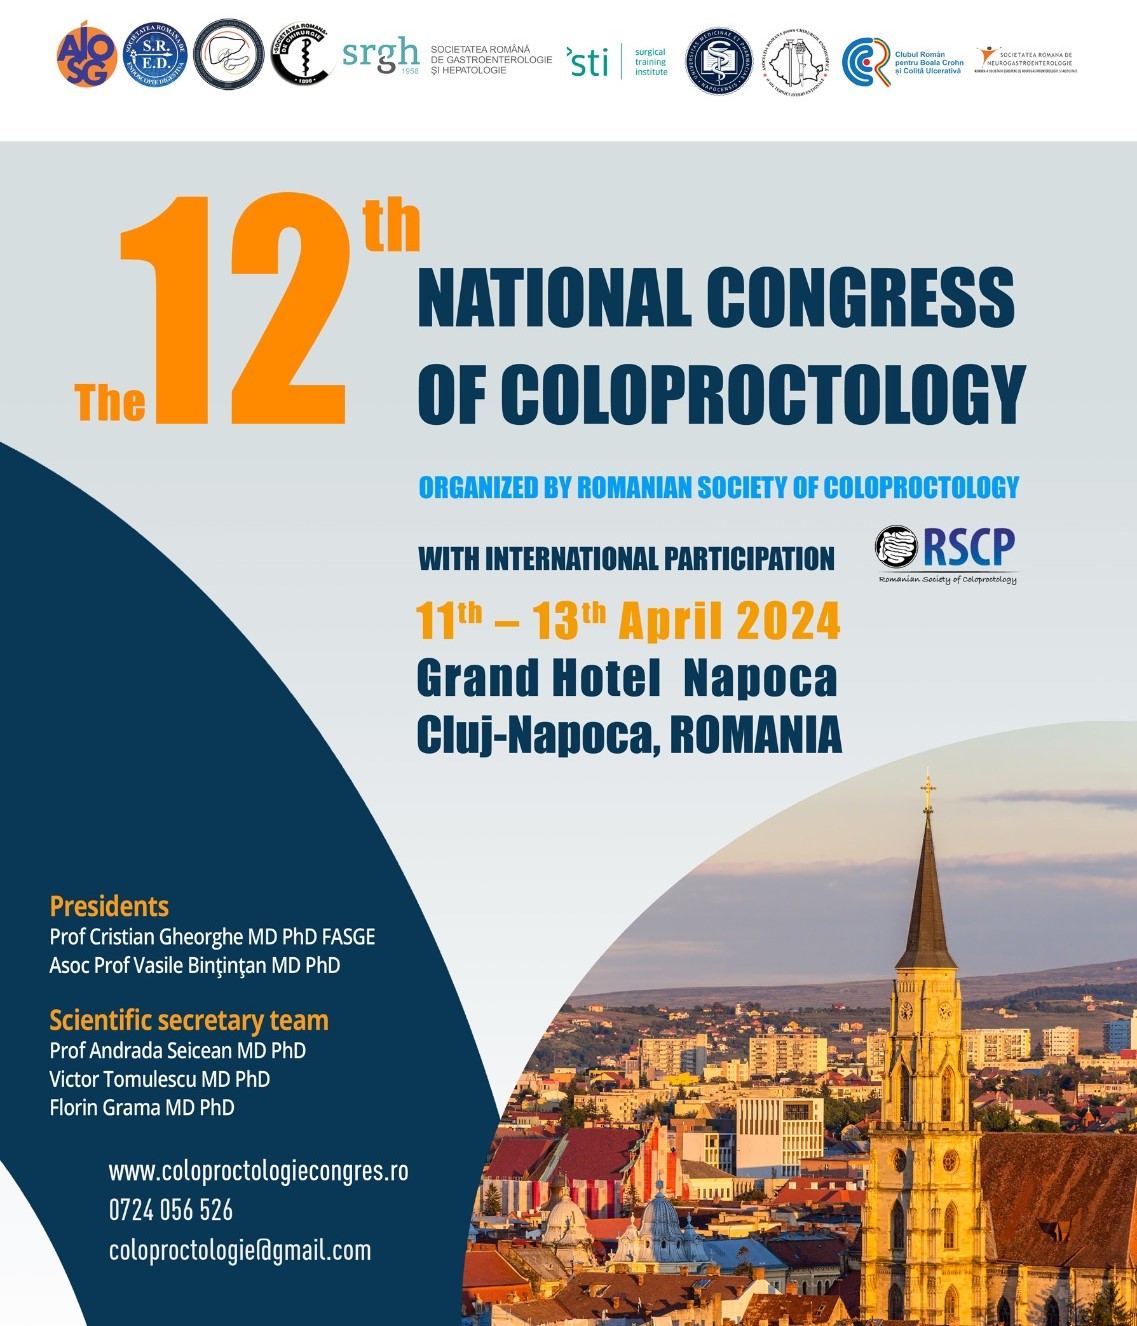 Congresul Național de Coloproctologie va avea loc între 11-13 aprilie 